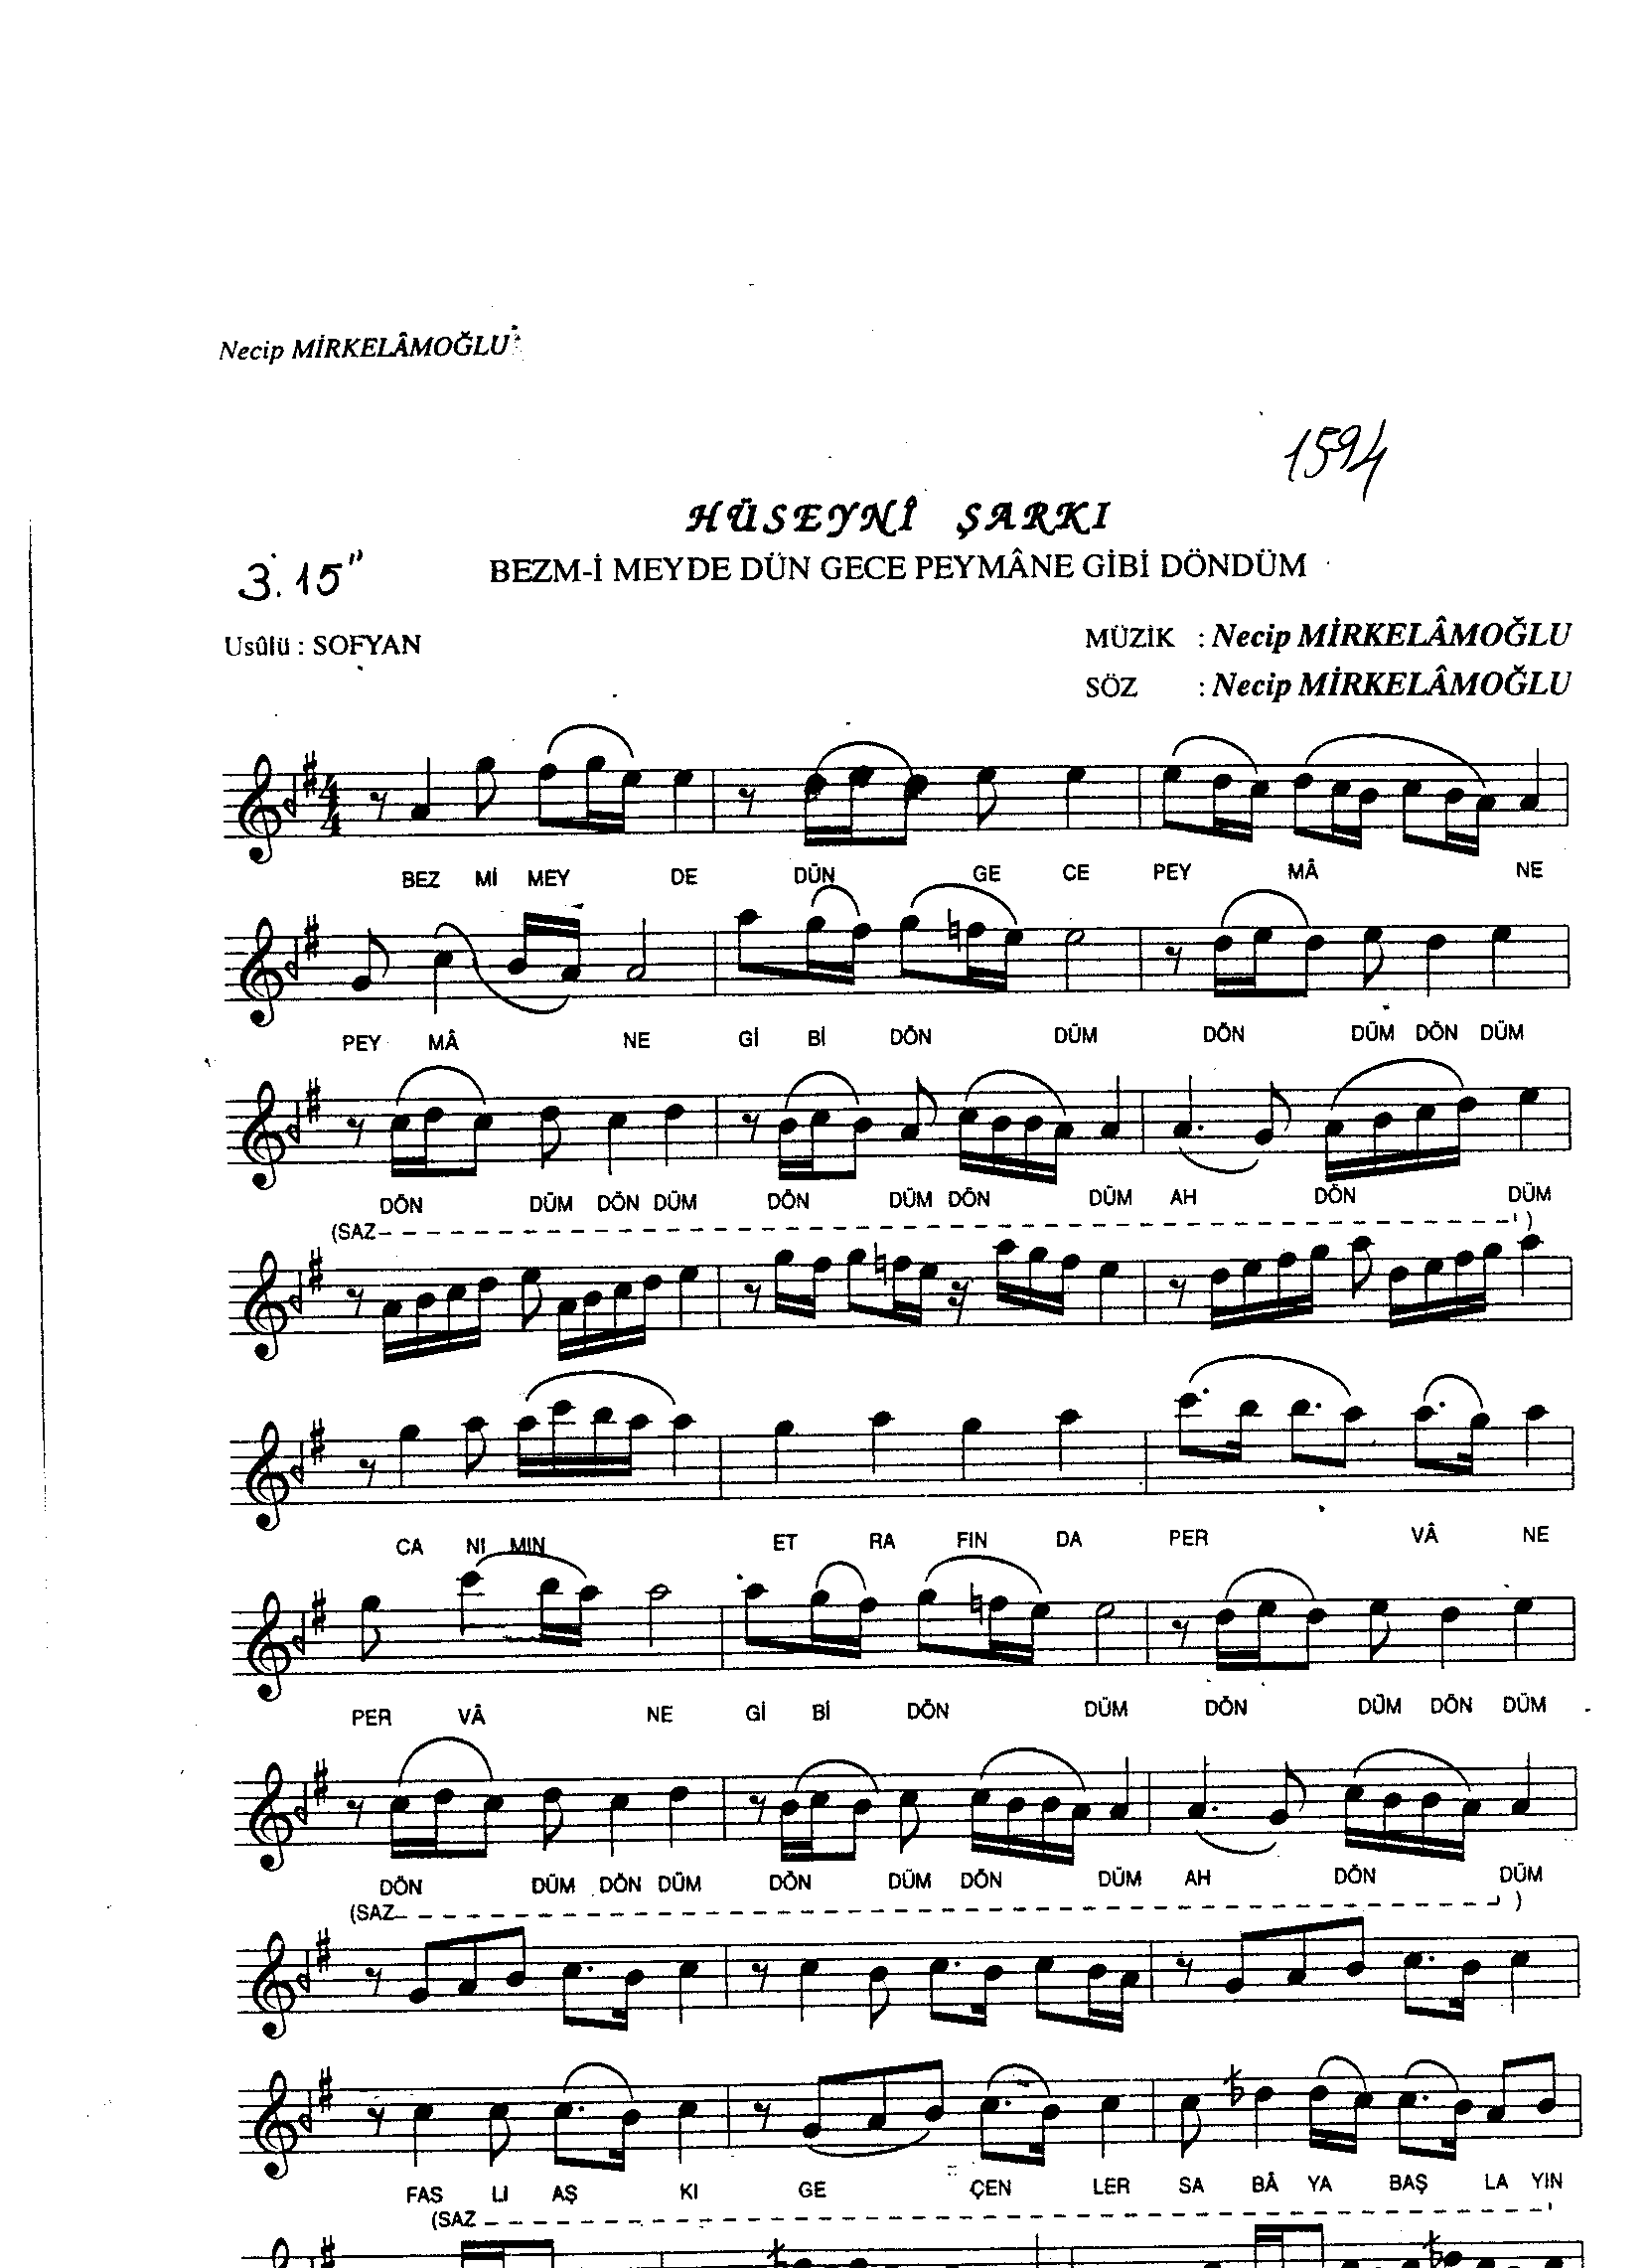 Hüseynî - Şarkı - Necip Mirkelâmoğlu - Sayfa 1